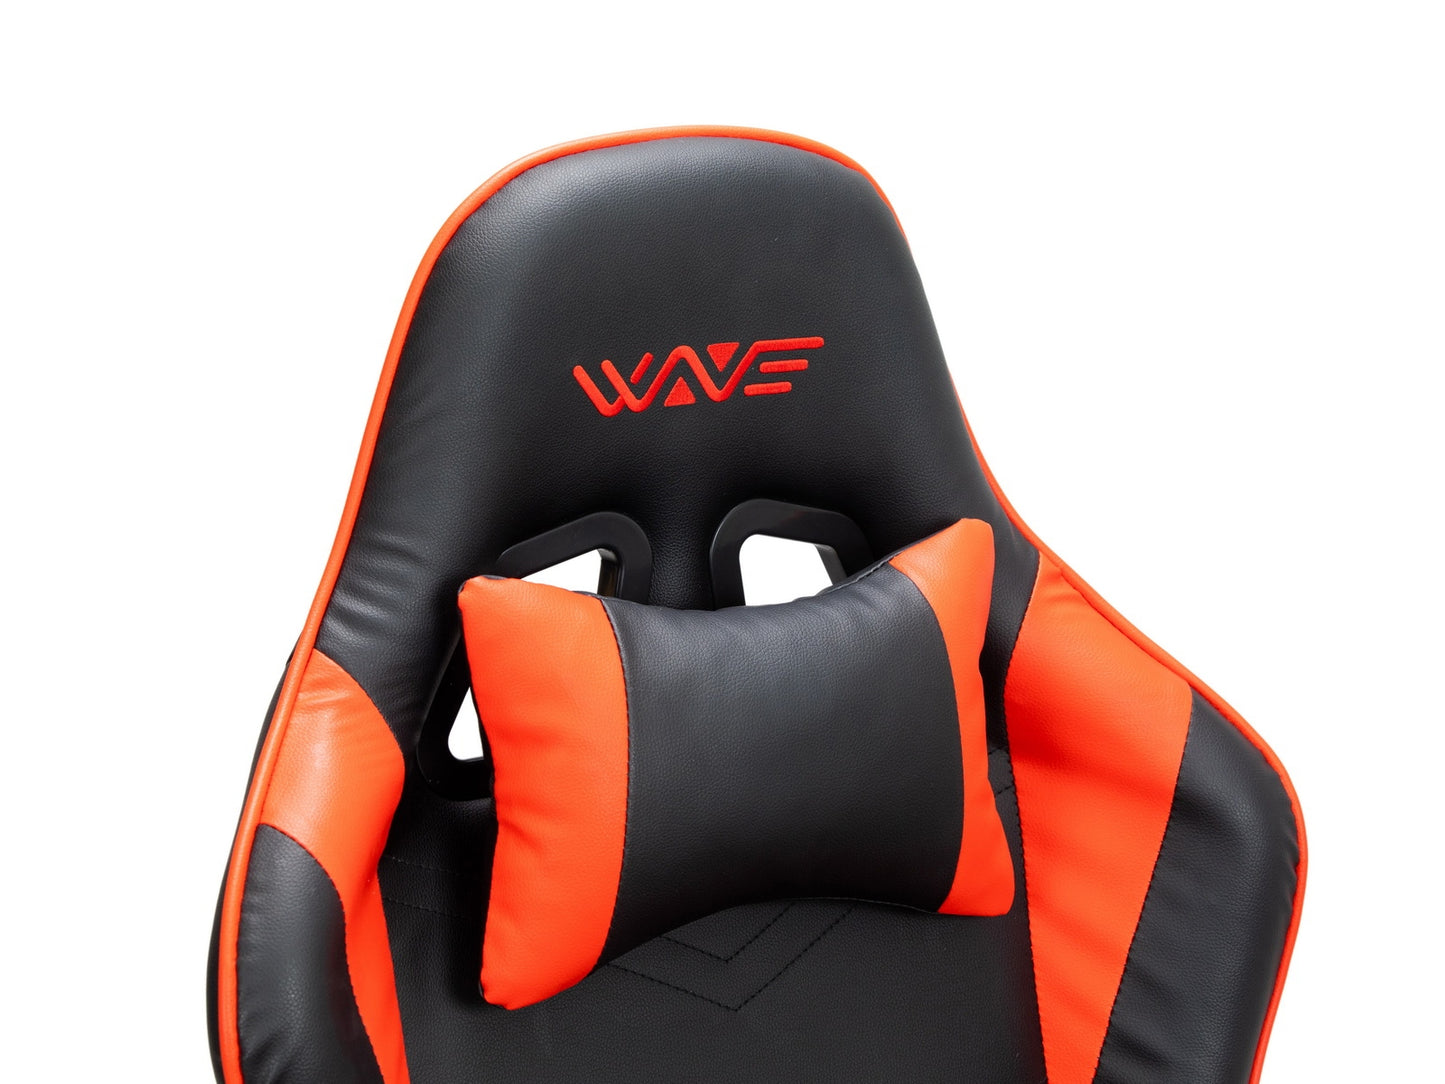 Chaise de jeu rembourrée en cuir écologique Wave Y-2555A, Rouge / Noir, L67xW66xH128-136 cm